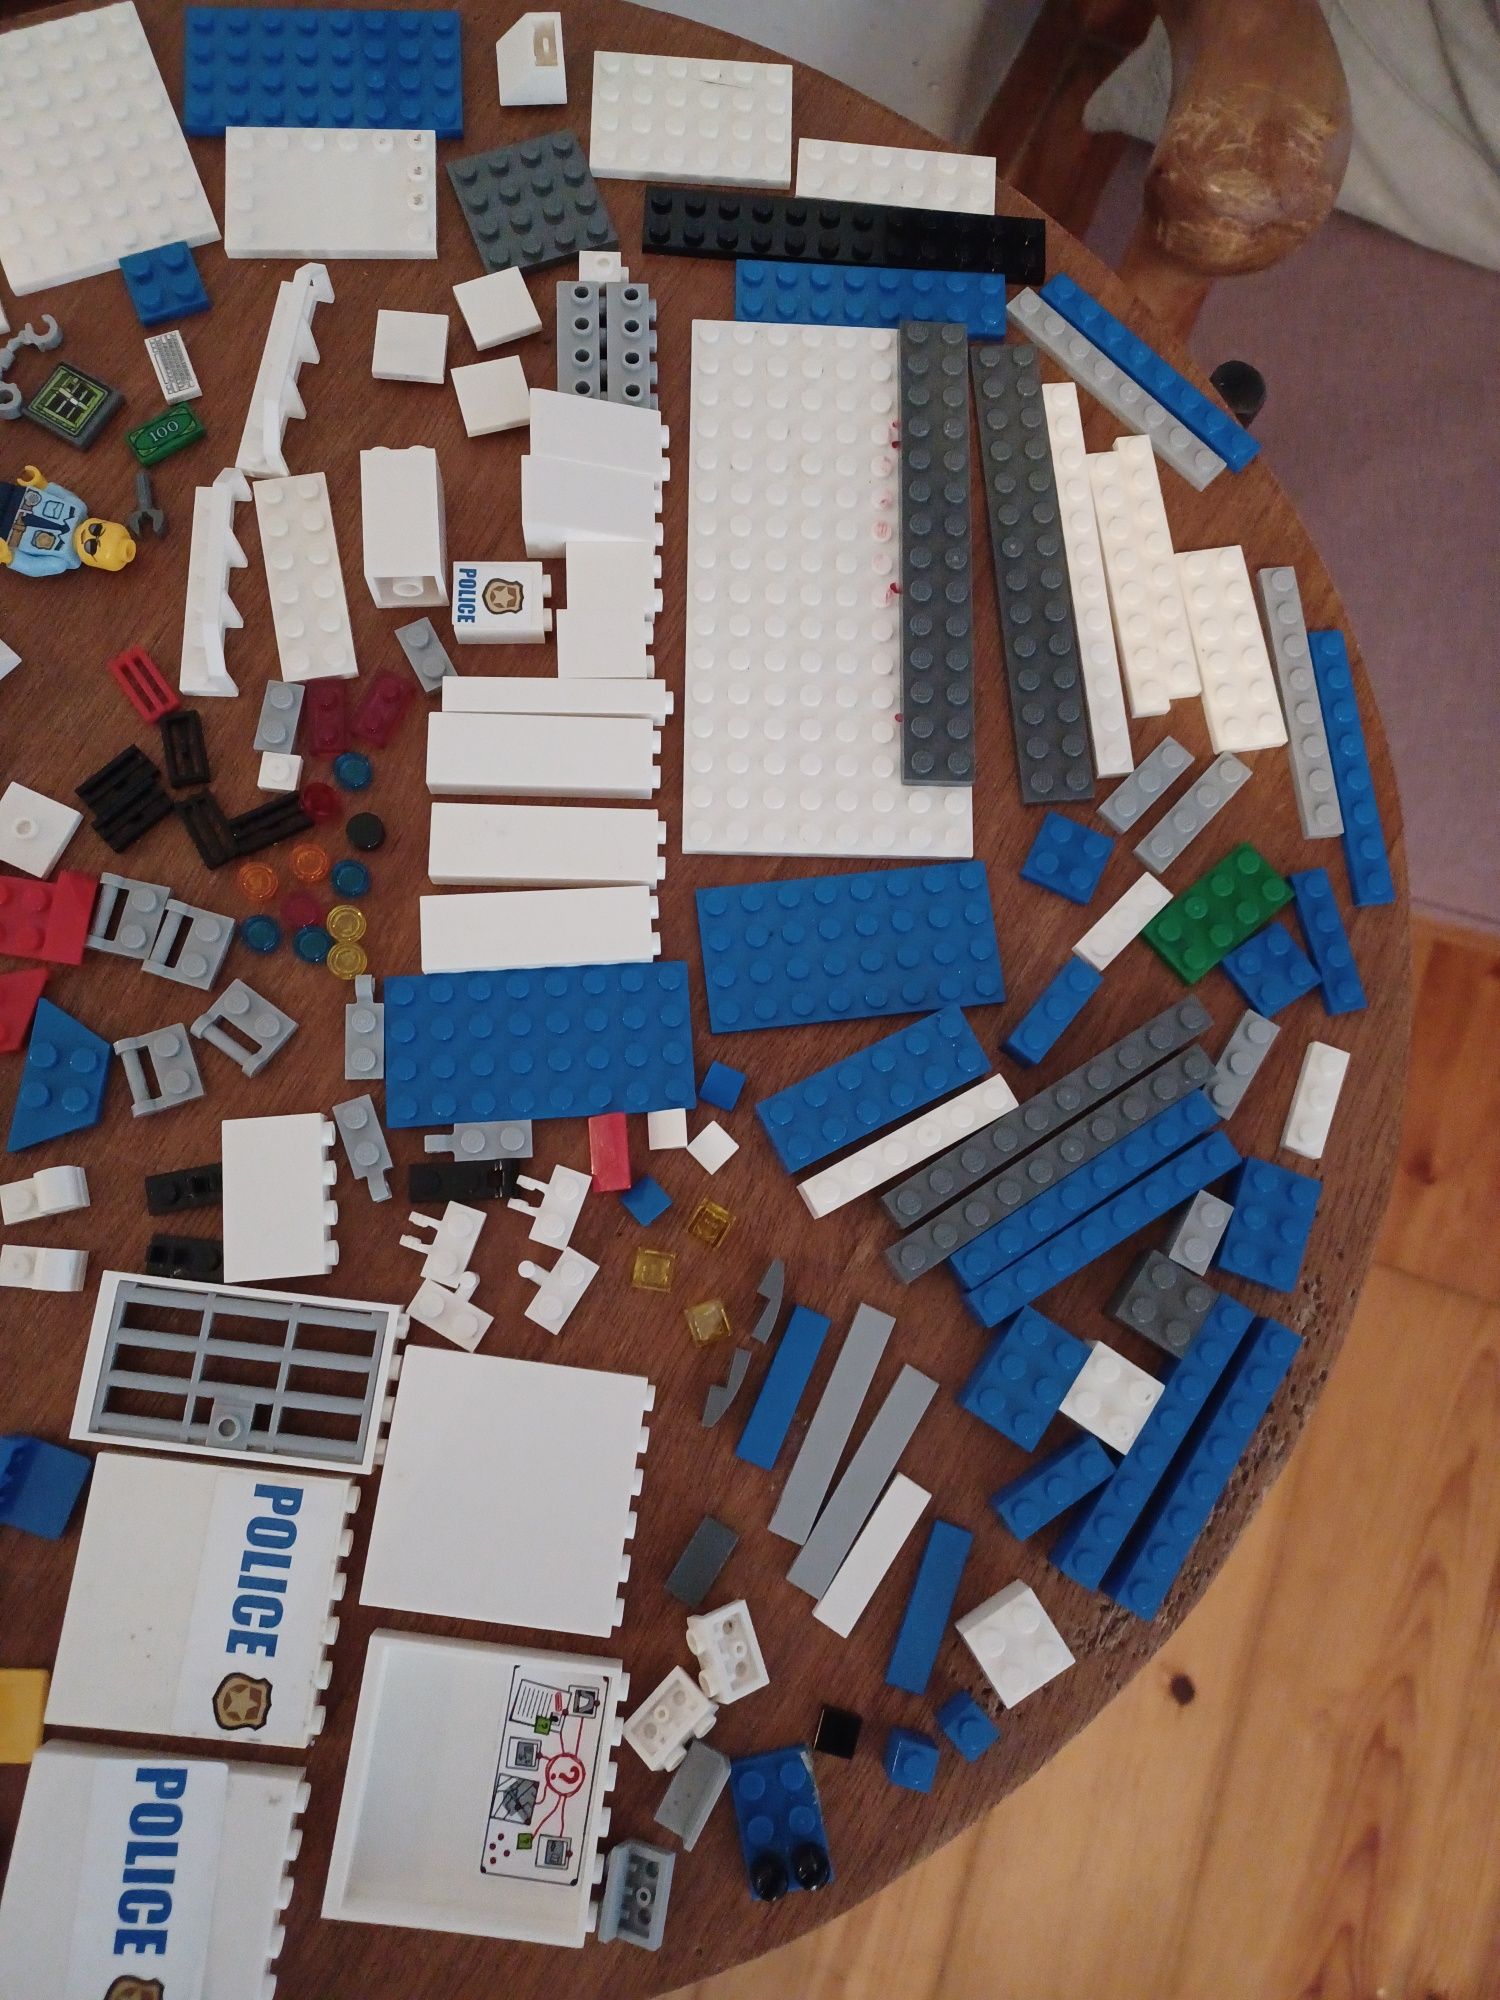 Aproximadamente 180 peças LEGO